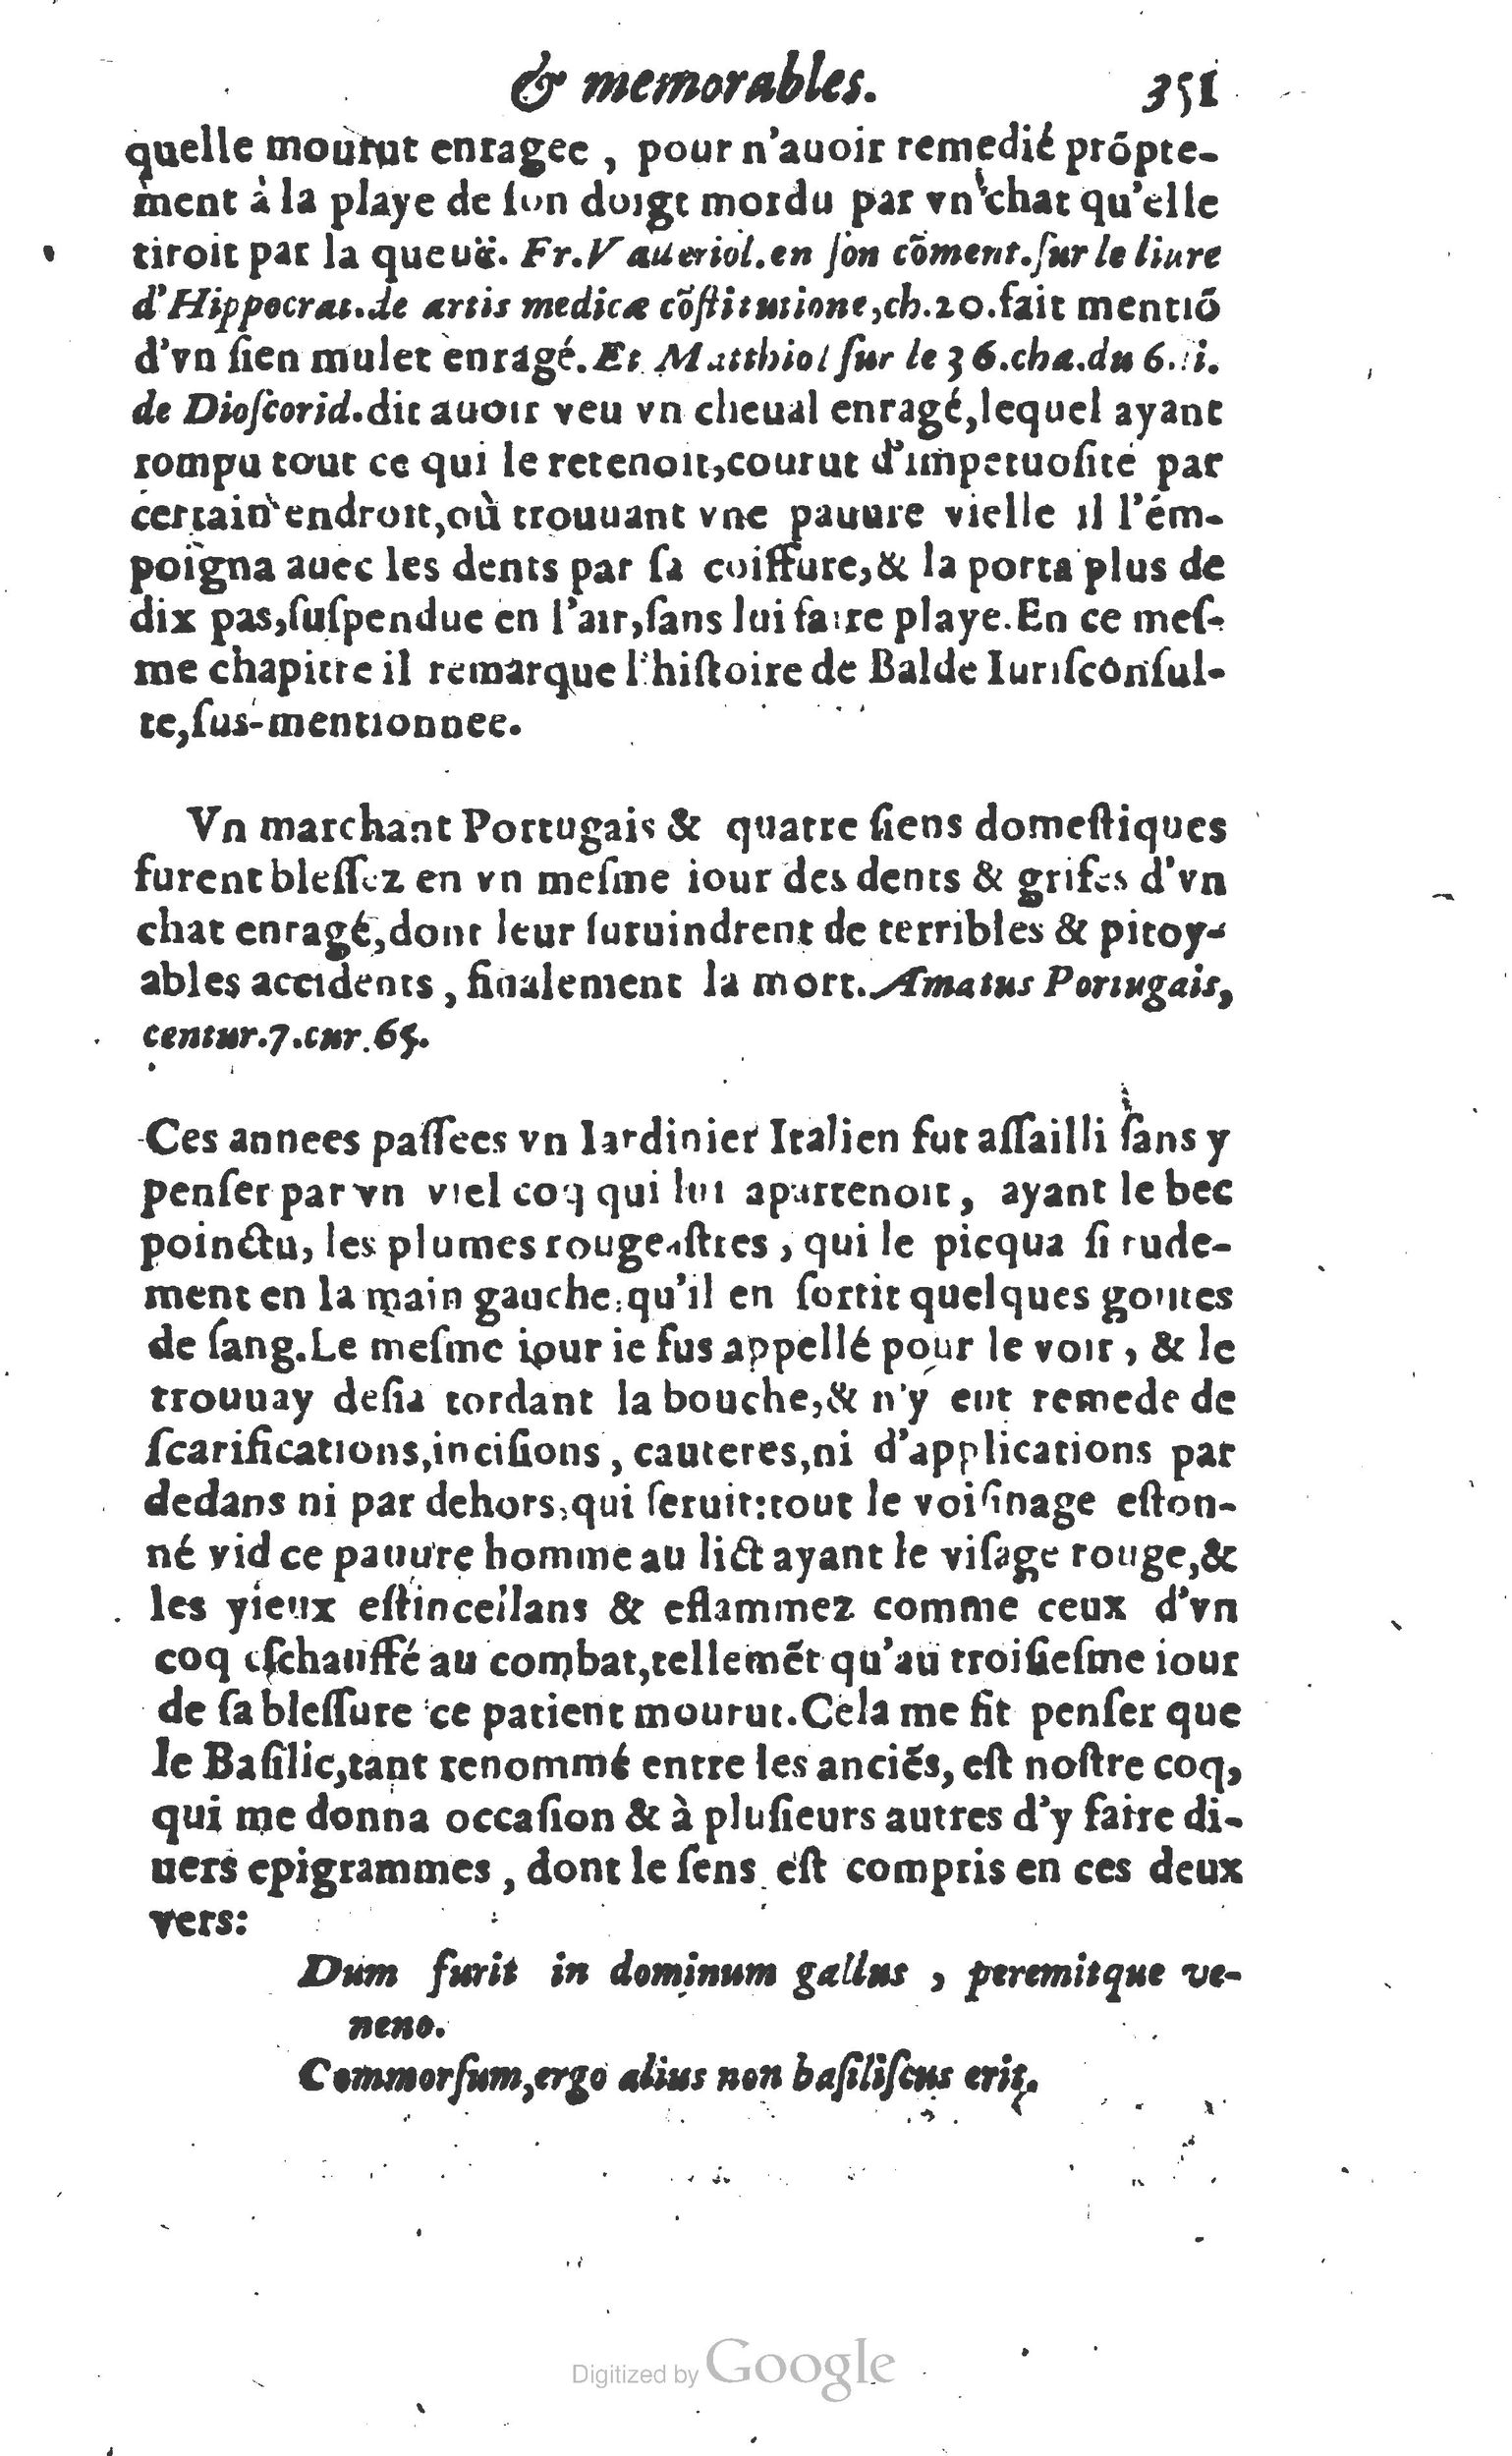 1610 Trésor d’histoires admirables et mémorables de nostre temps Marceau Princeton_Page_0372.jpg